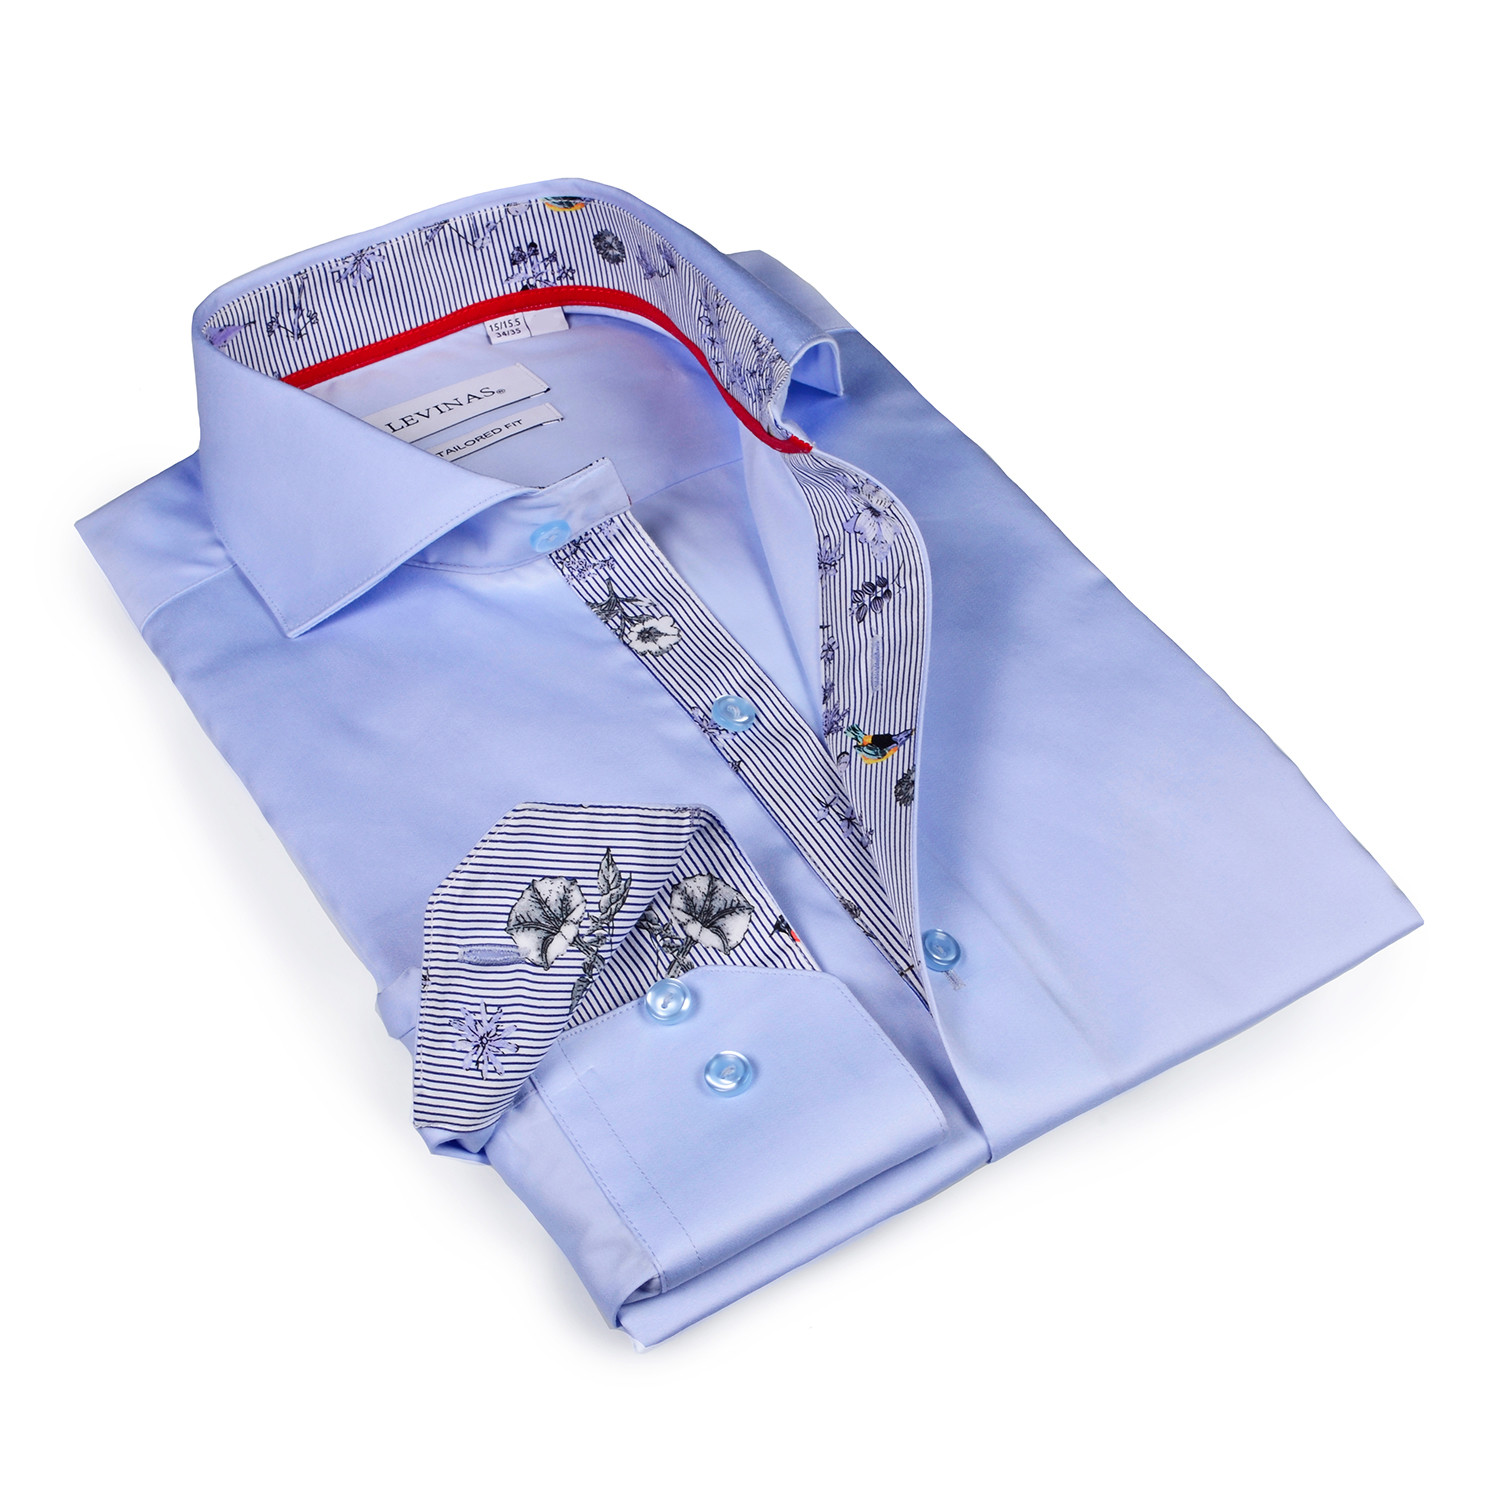 Kayden Print Button-Up Shirt // Light Blue (XL) - Levinas Collection ...